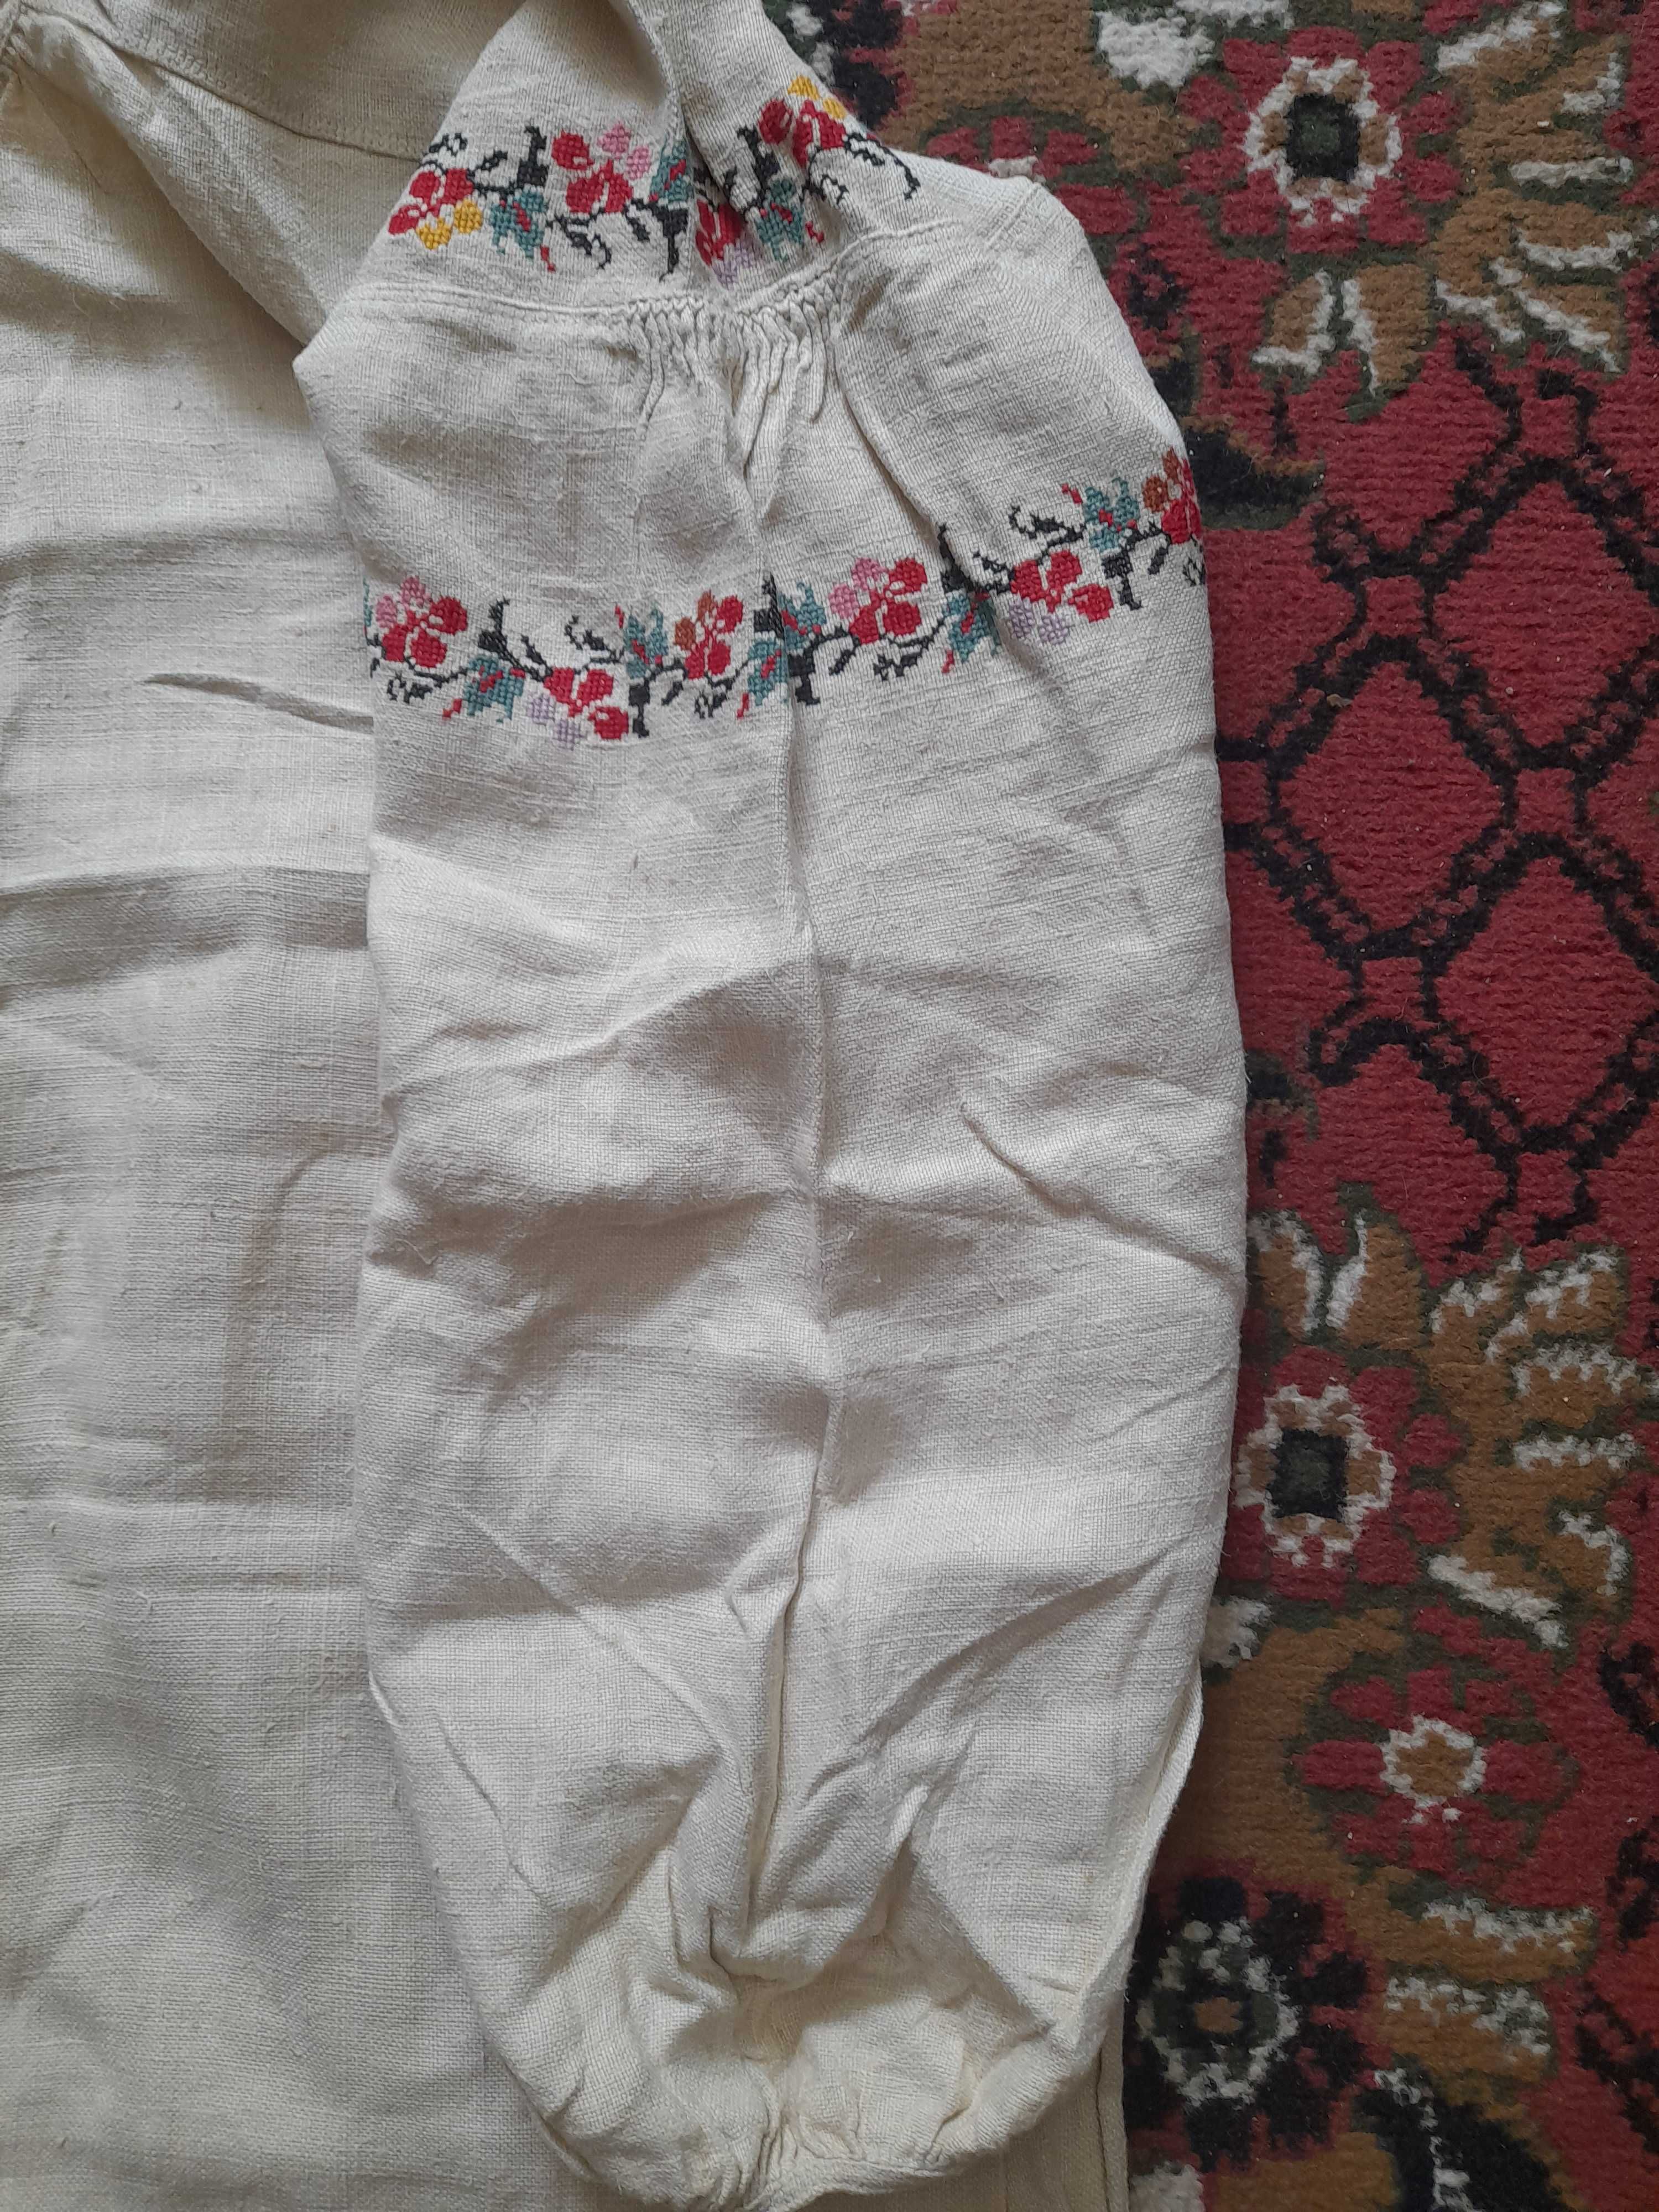 Сорочки жіночі старовинні вишиті з домотканного полотна.